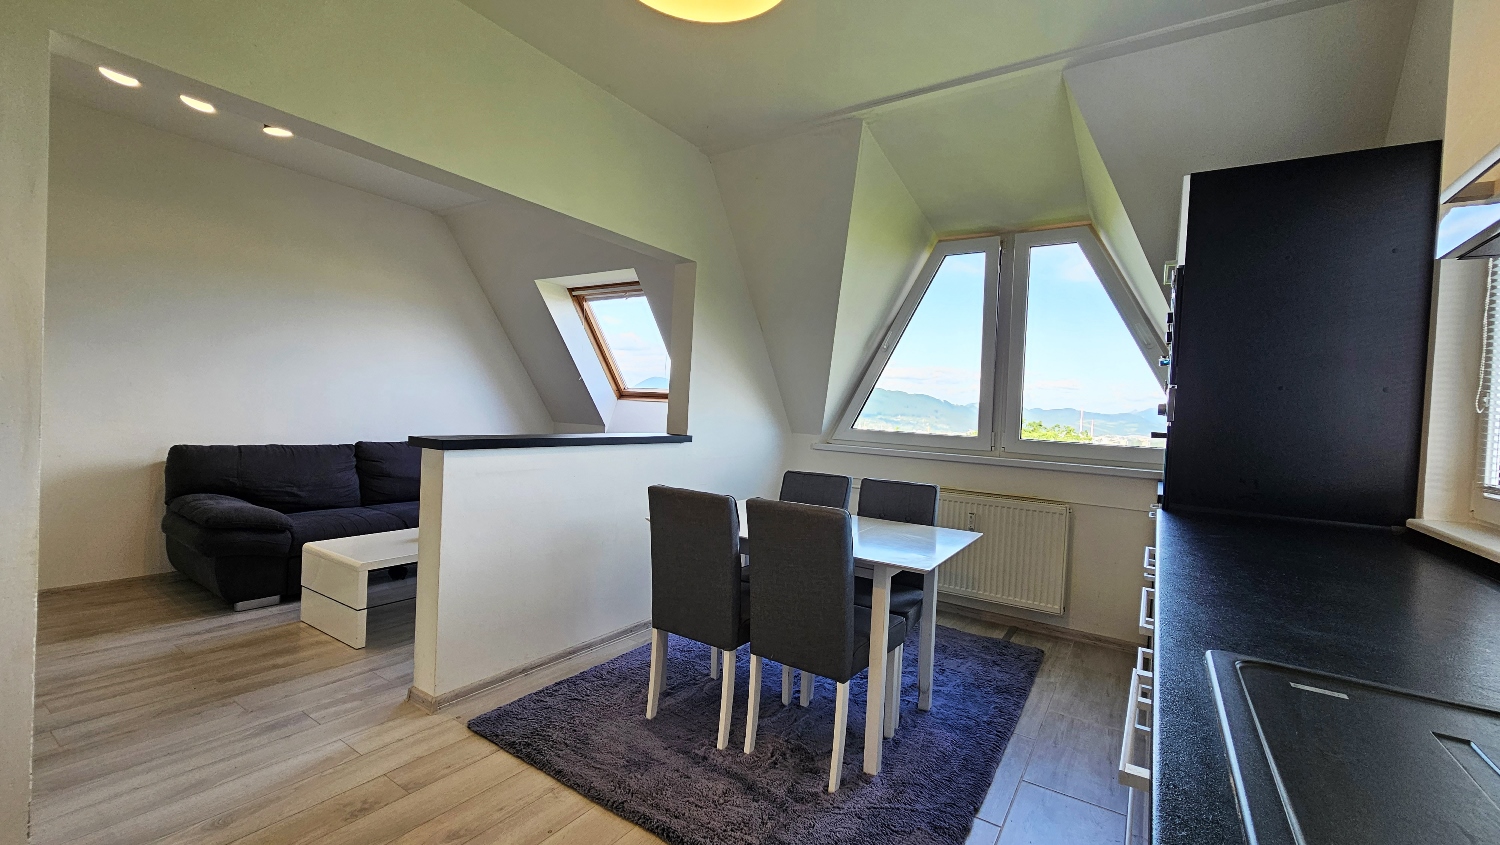 EXKLUZÍVNE! Elegantný podkrovný 2-izbový byt, zrekonštruovaný, krásny výhľad, predaj, Žilina – Hájik, Cena: 152.000 €